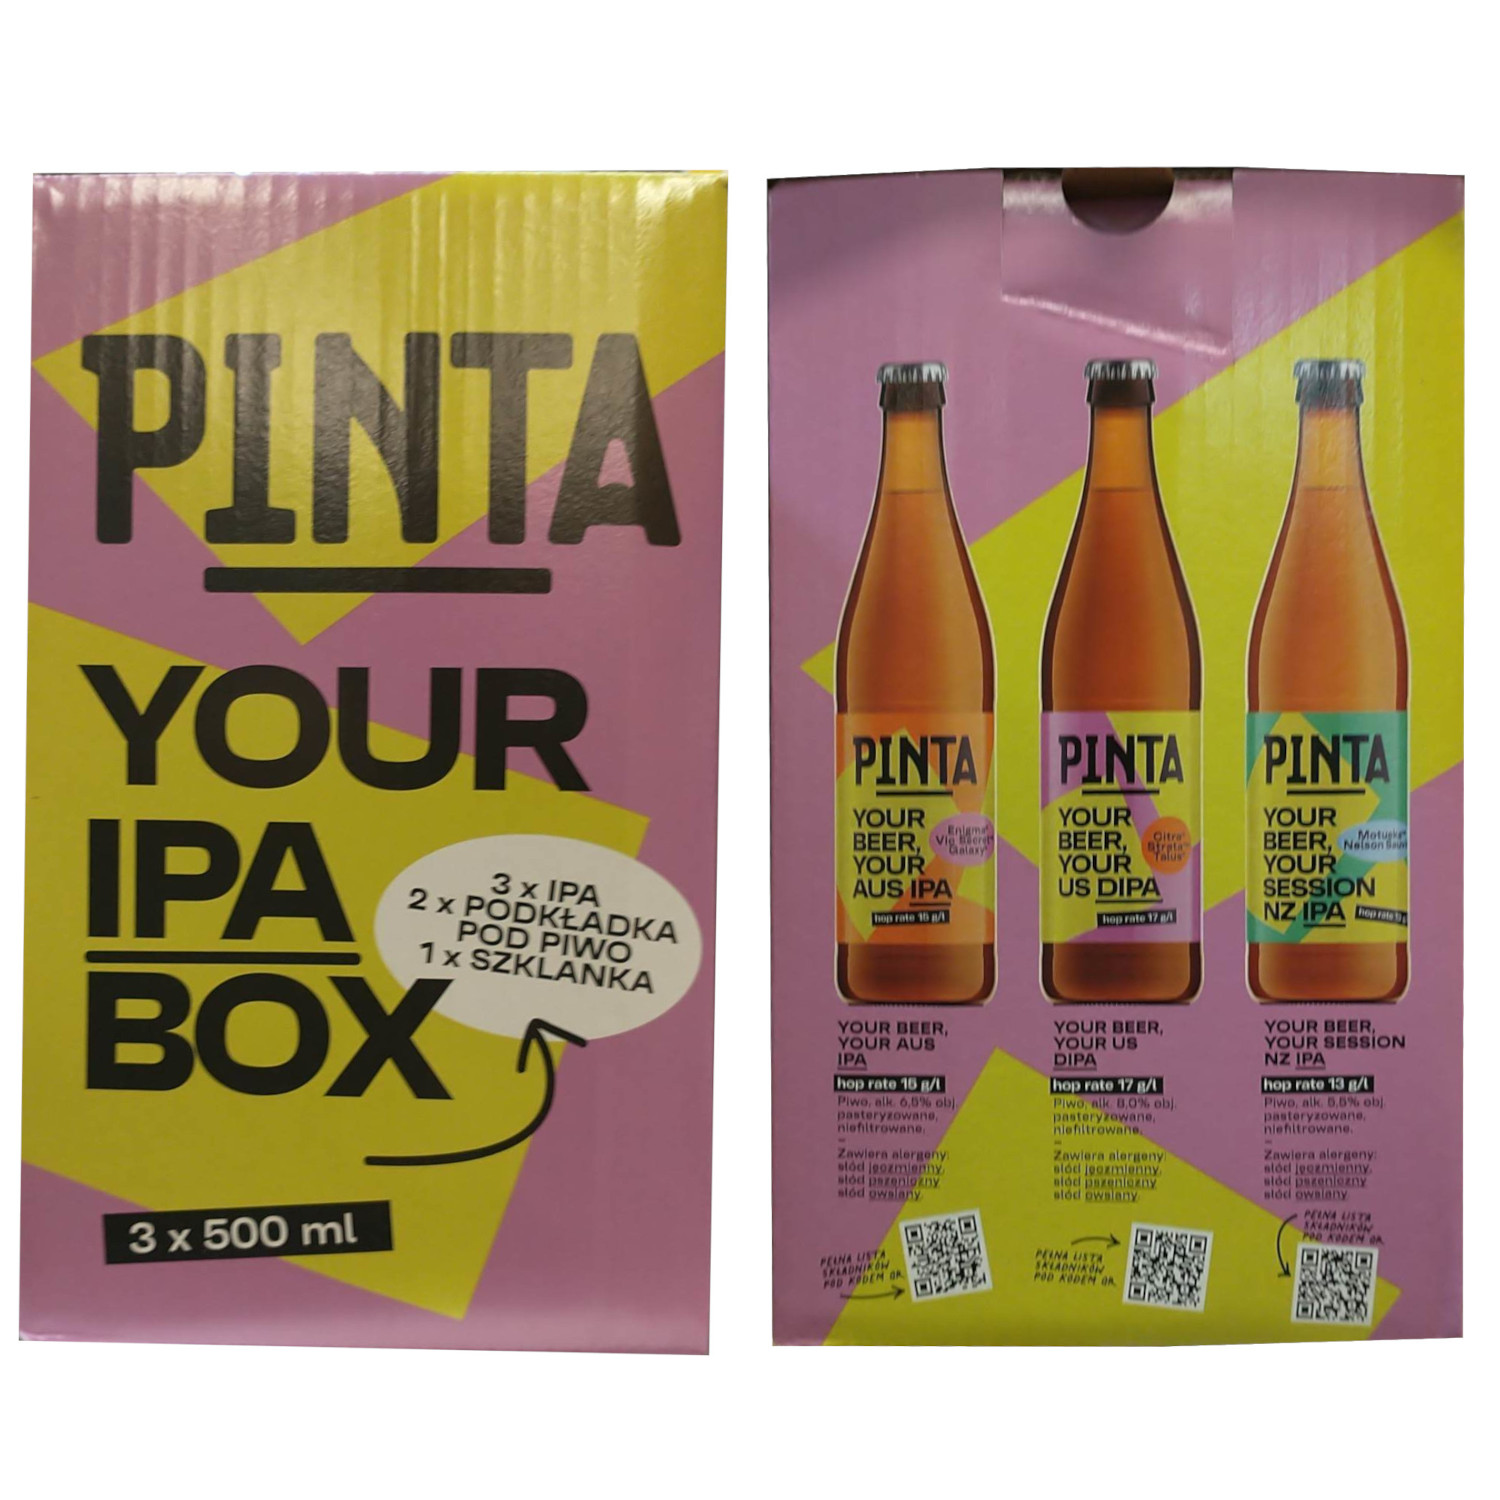 PINTA IPA BOX NOWY – Zestaw x3 PIWA + Szklanka i Podkładki